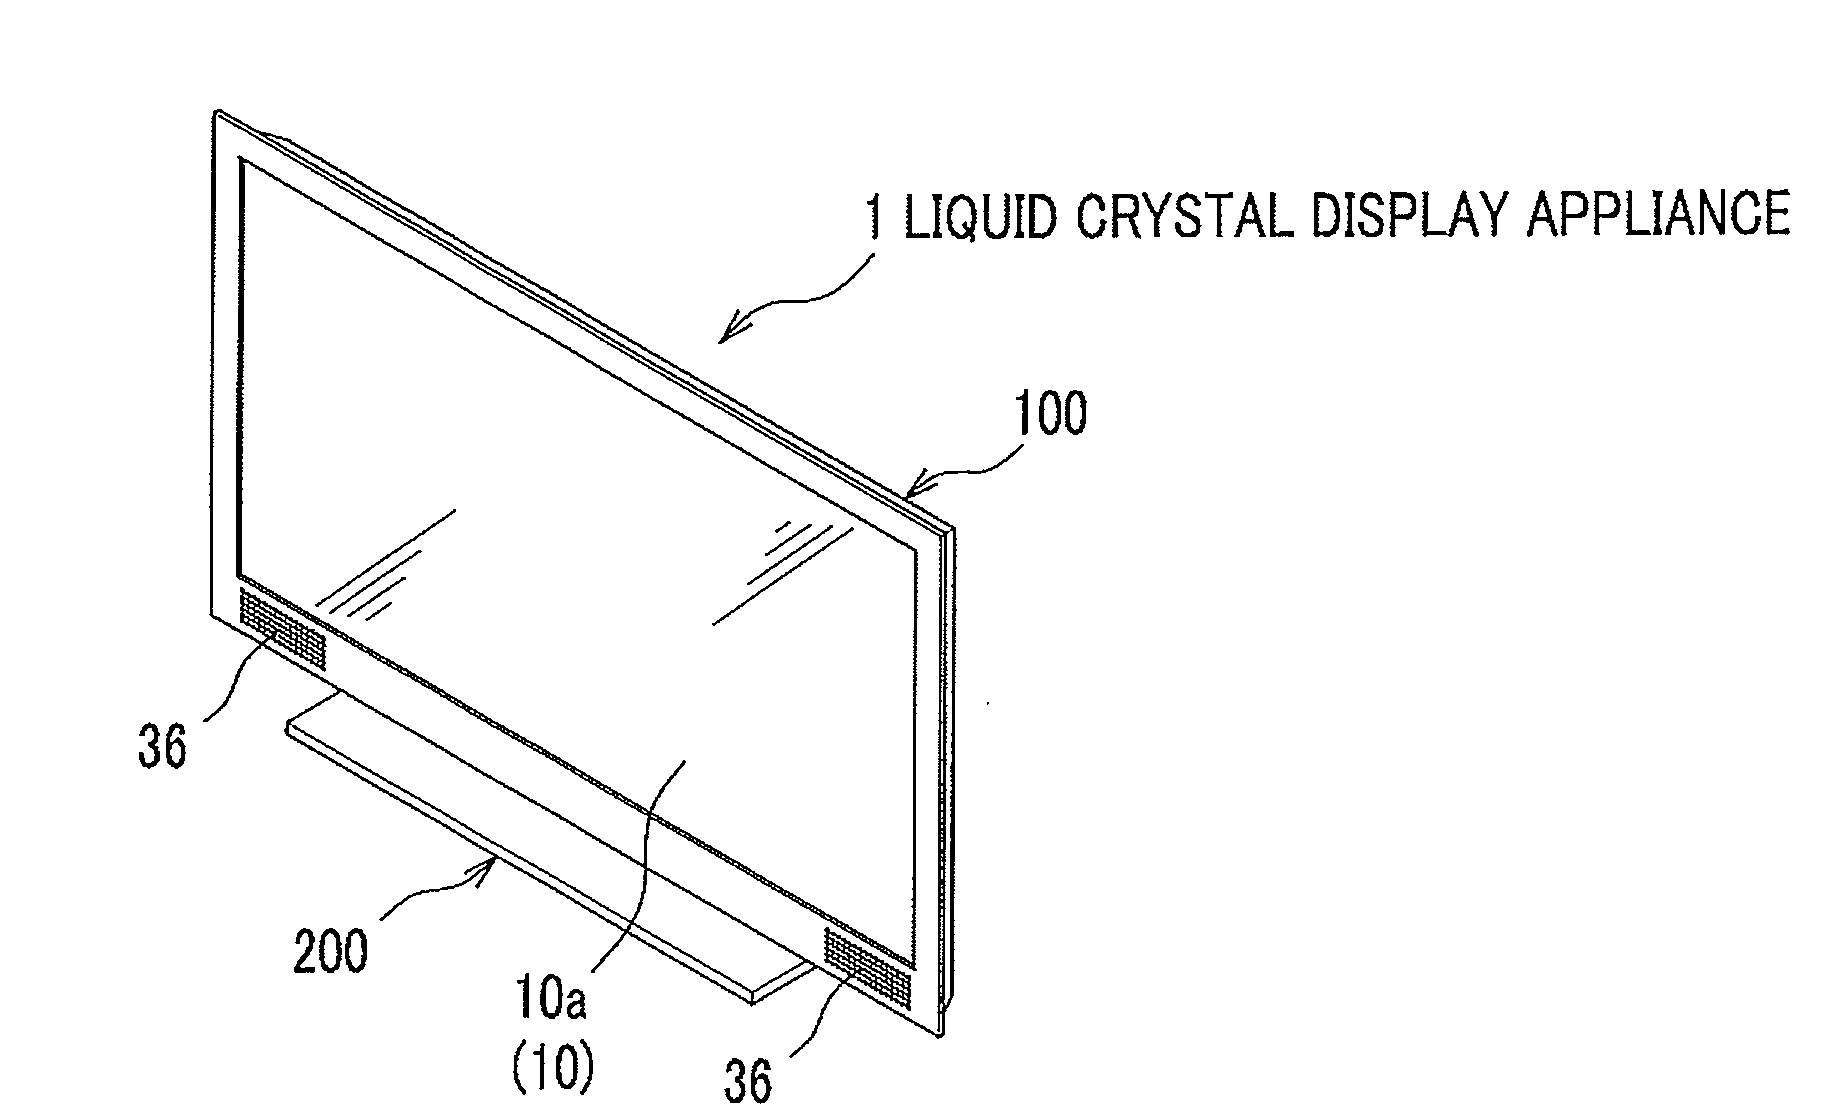 Liquid Crystal Display Appliance